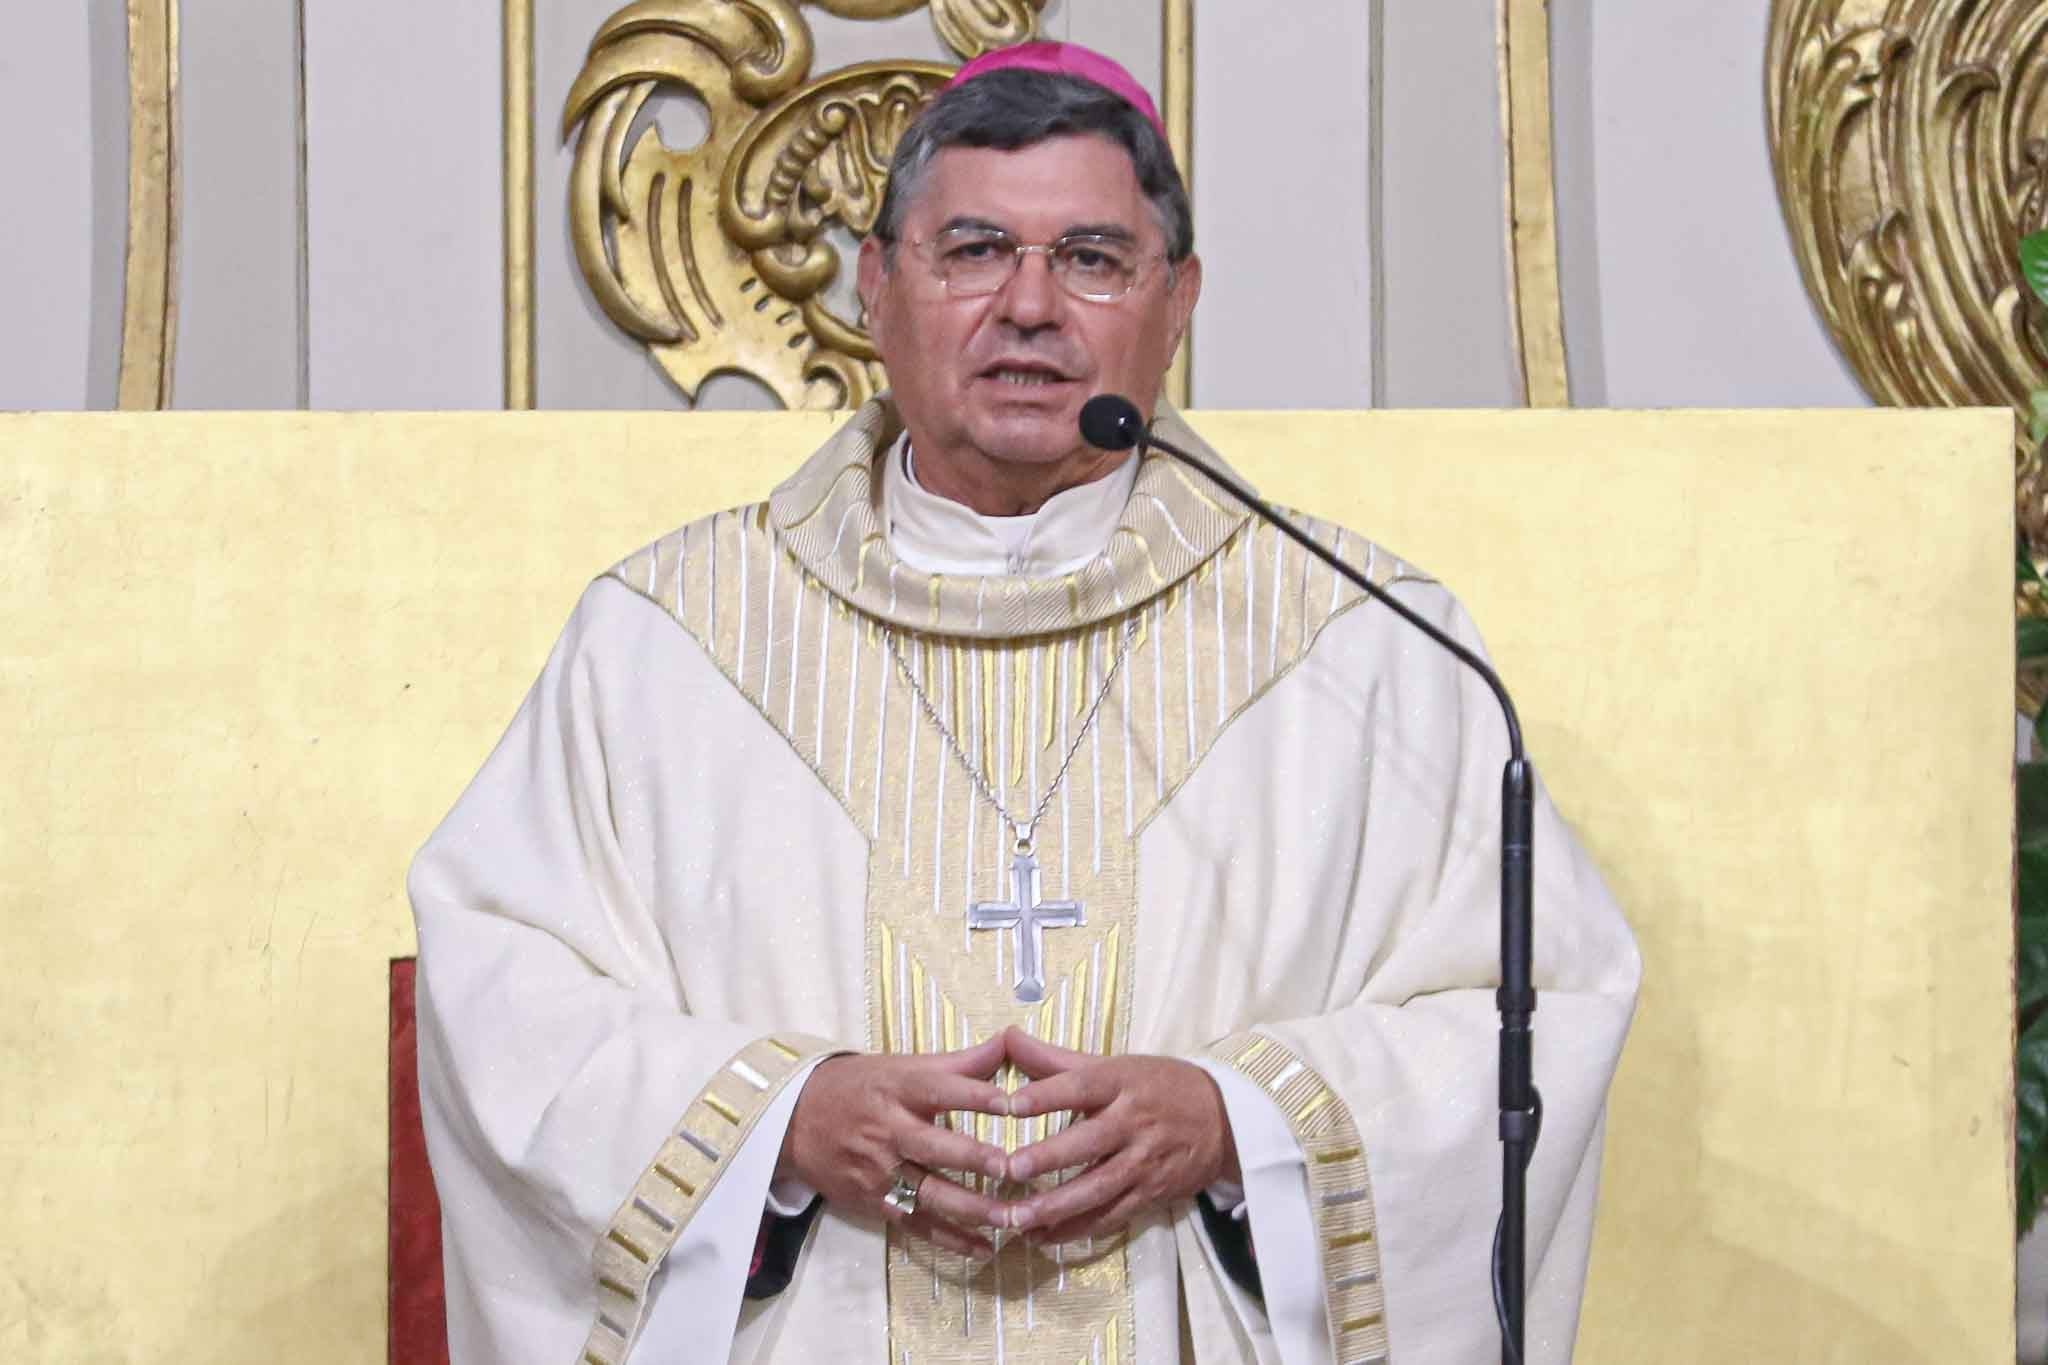 Bispo de Viana alerta que a paz no mundo deve começar nas famílias e entre vizinhos